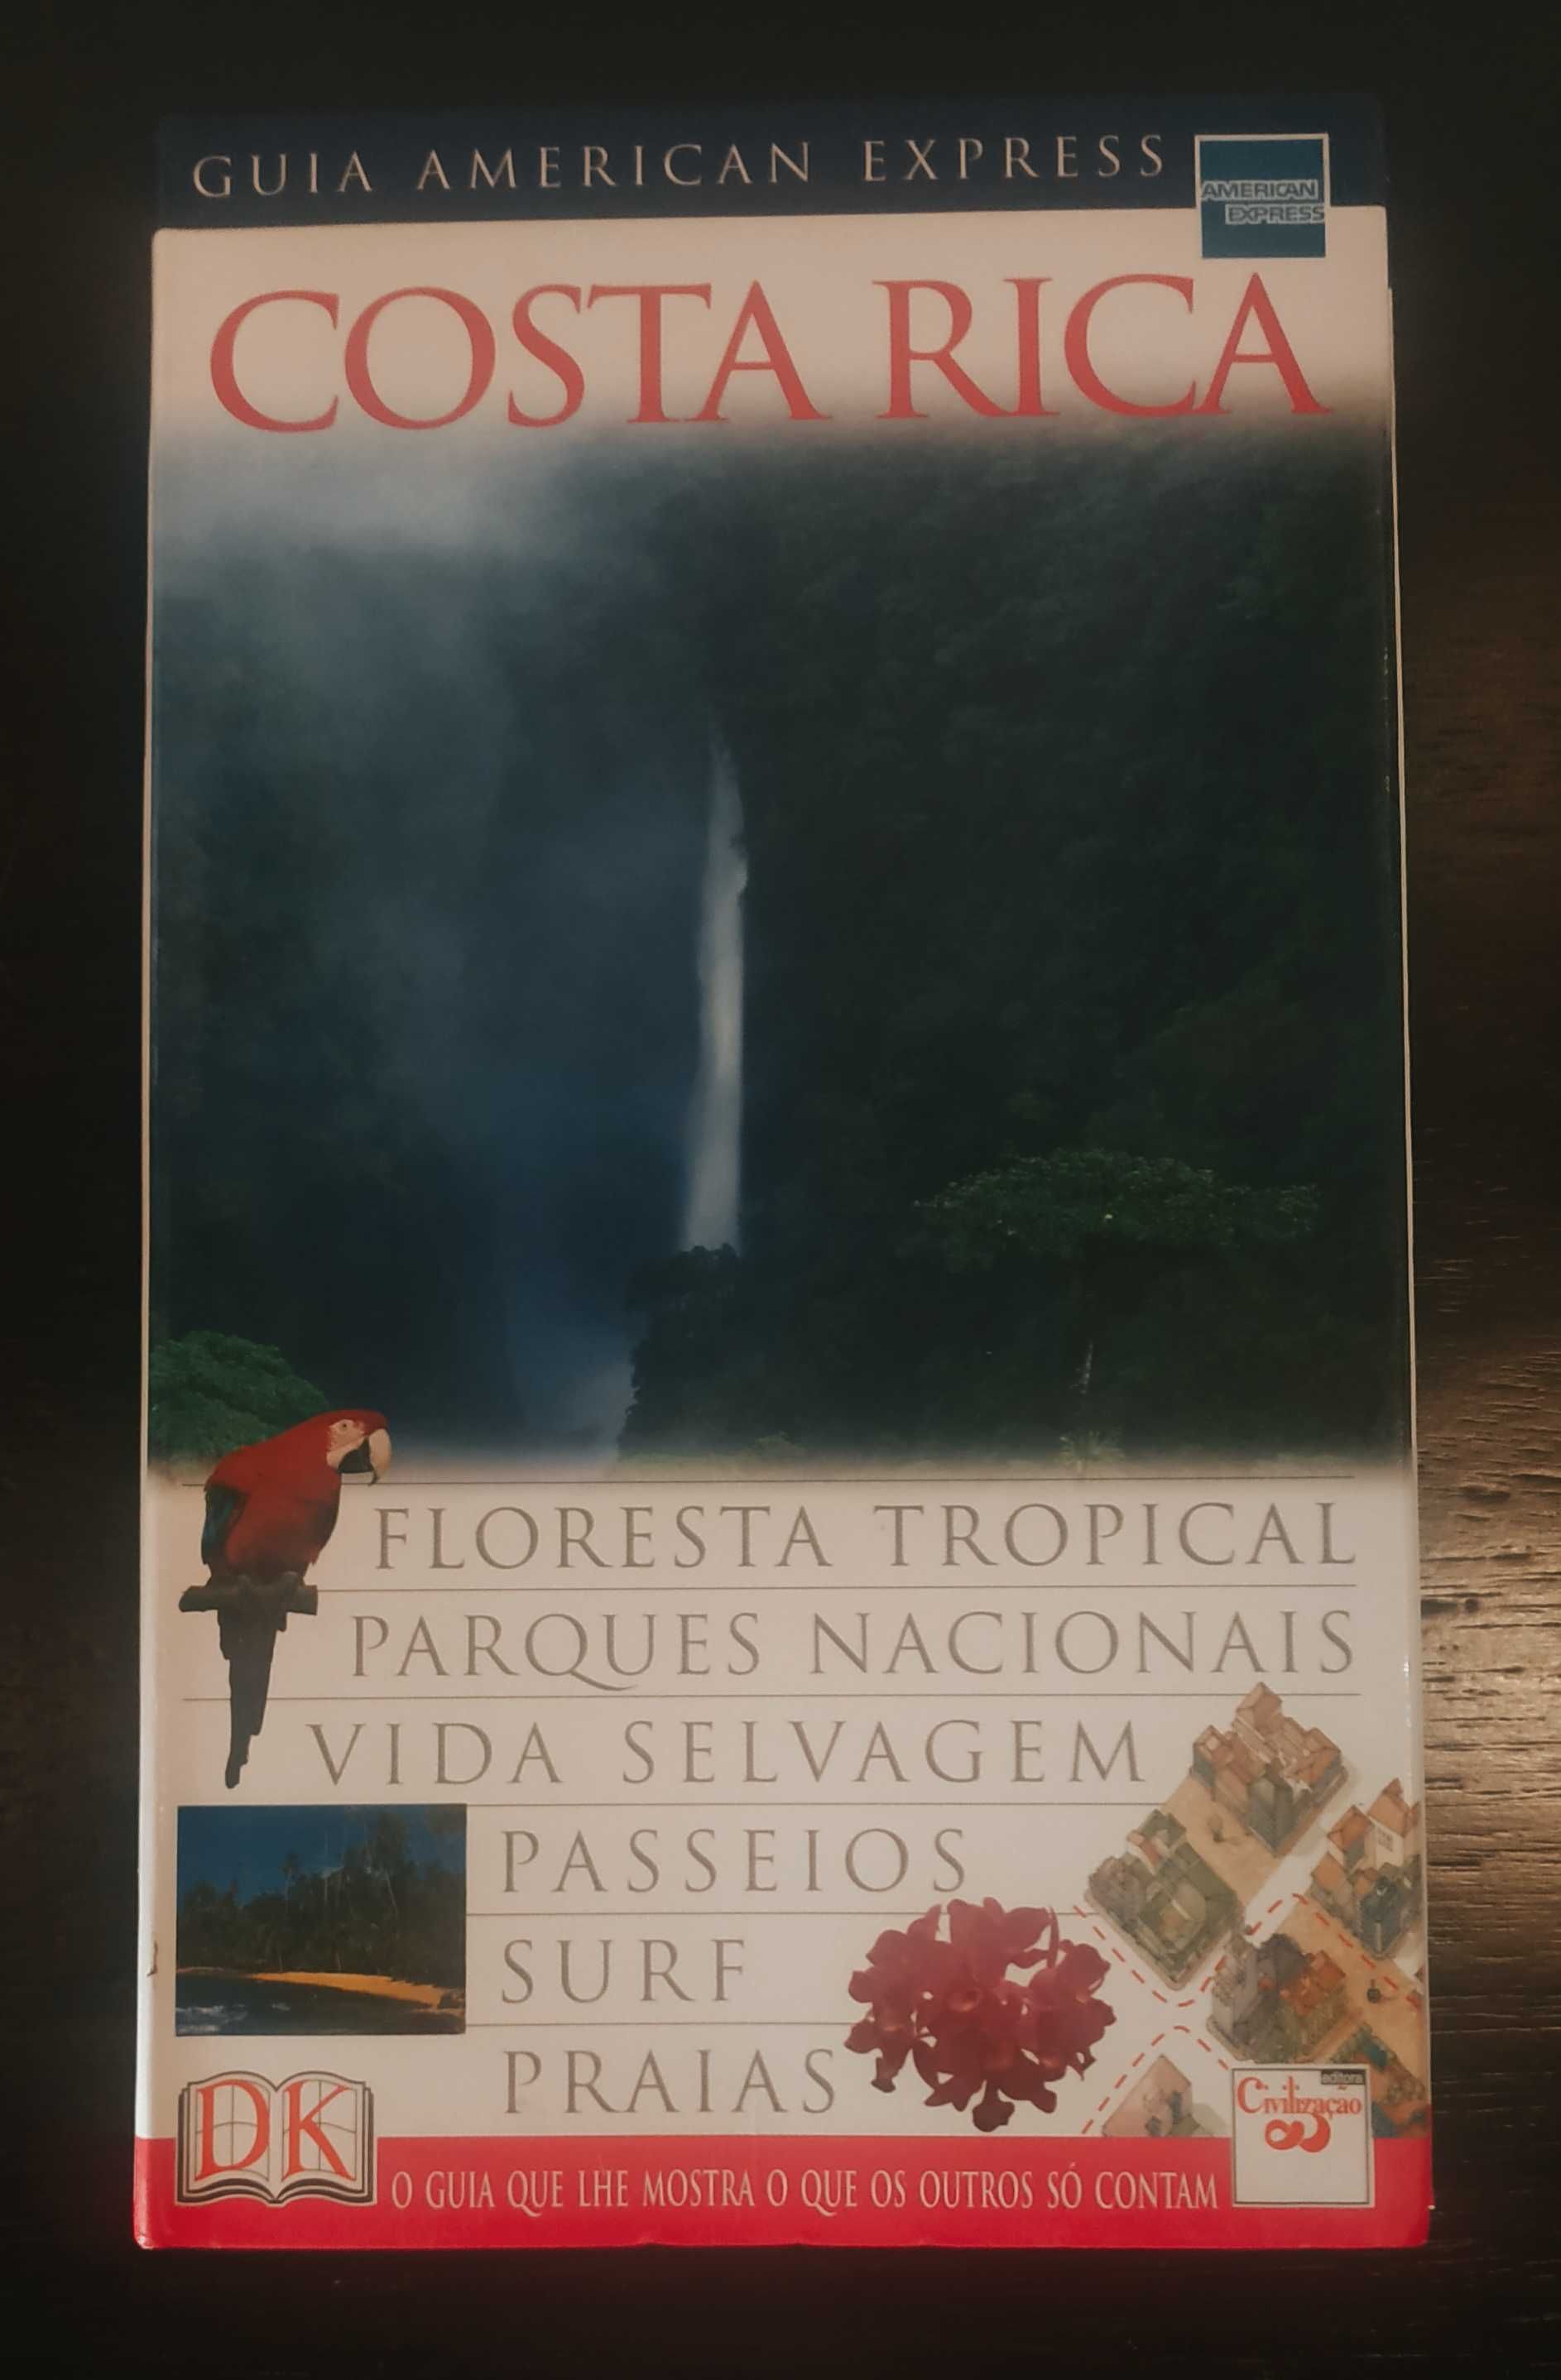 Guia American Express - Costa Rica